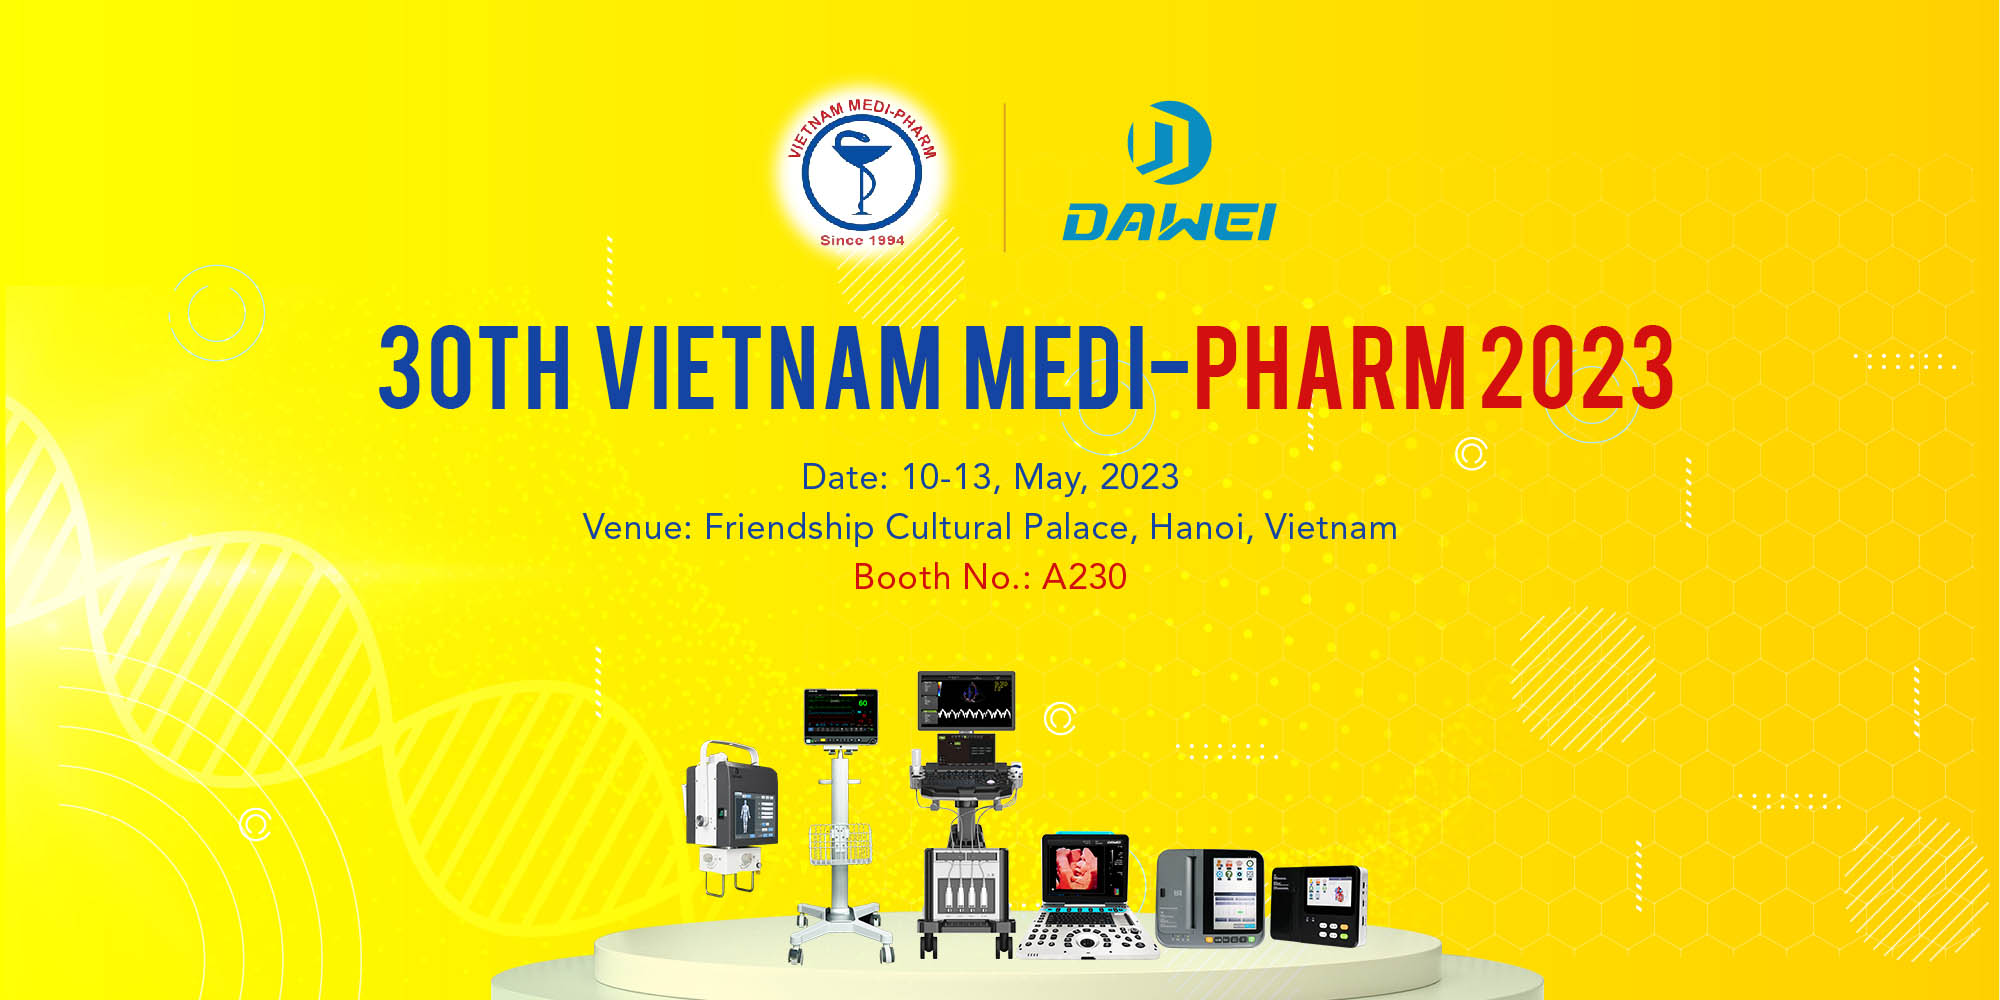 perubatan dawei akan mengambil bahagian dalam Medi-Pharm Vietnam ke-30 2023